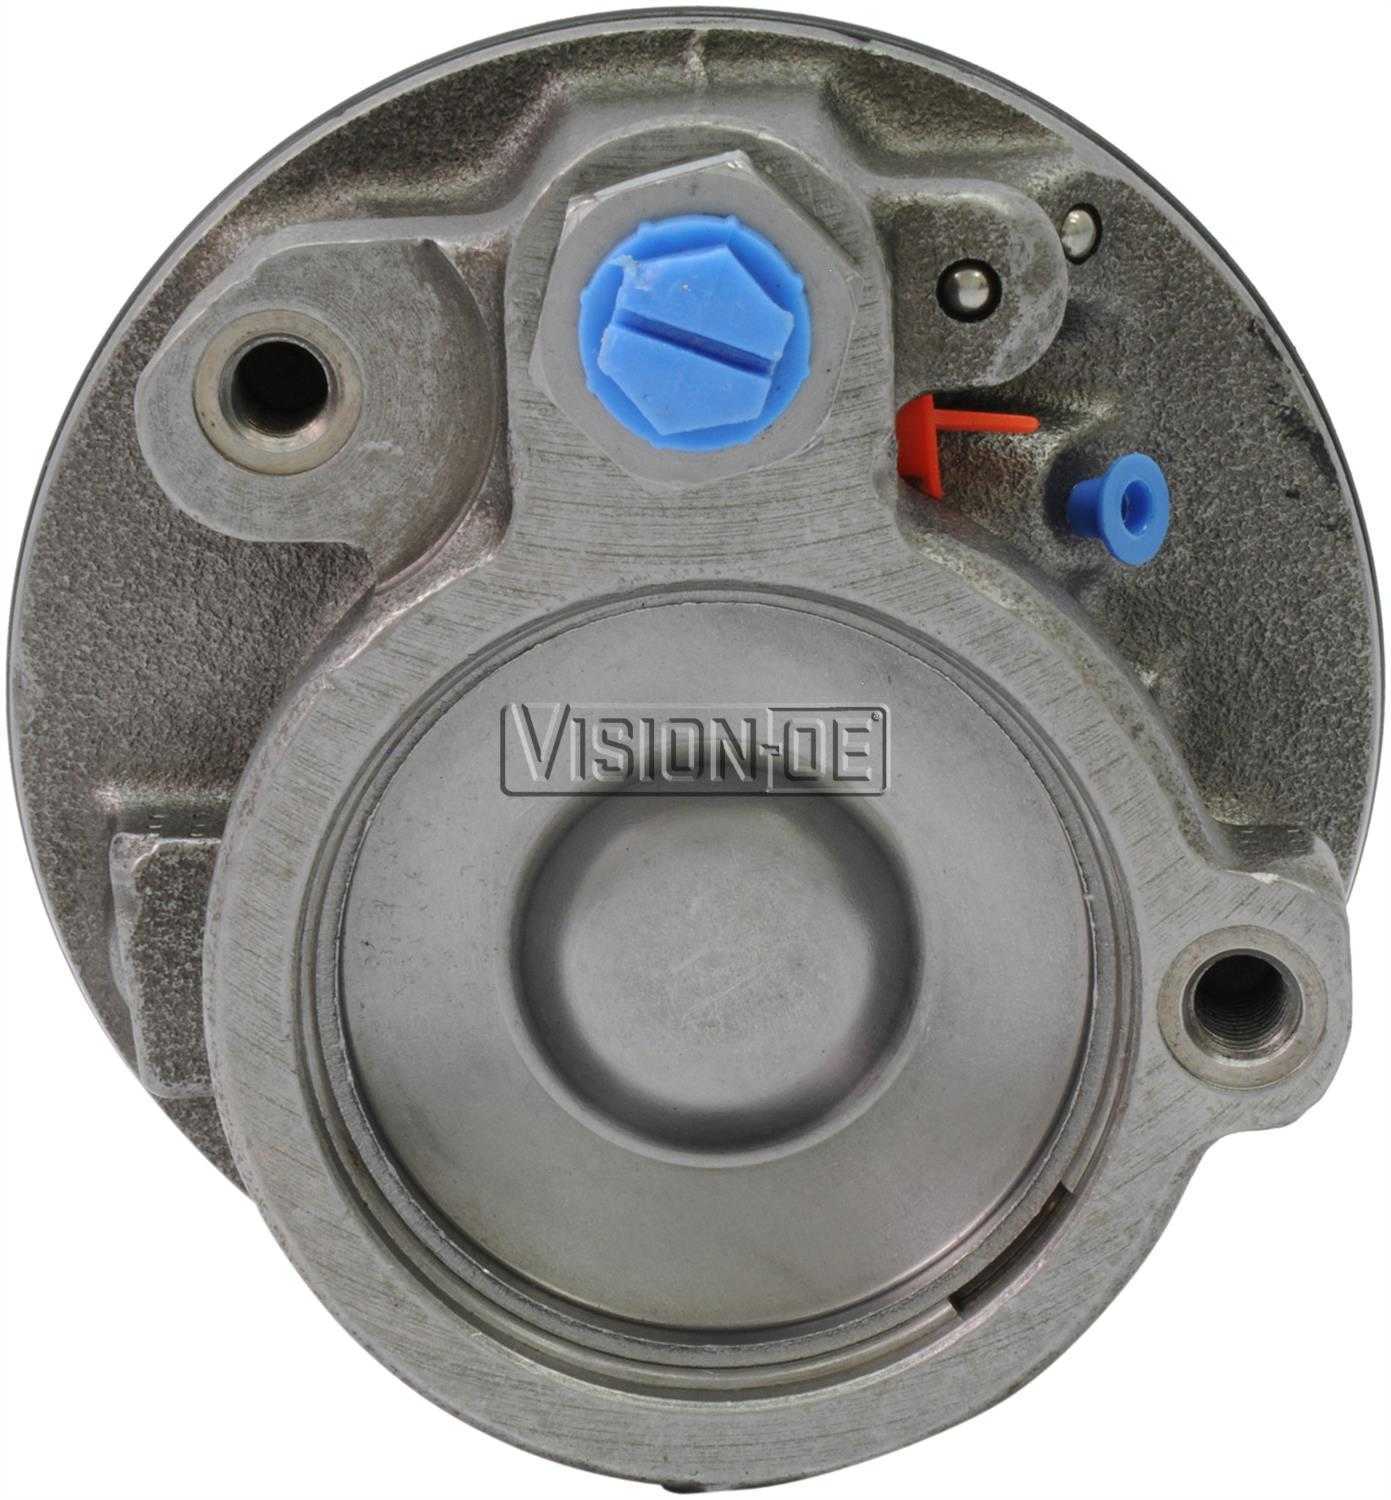 VISION-OE - Reman Power Steering Pump - VOE 732-0101